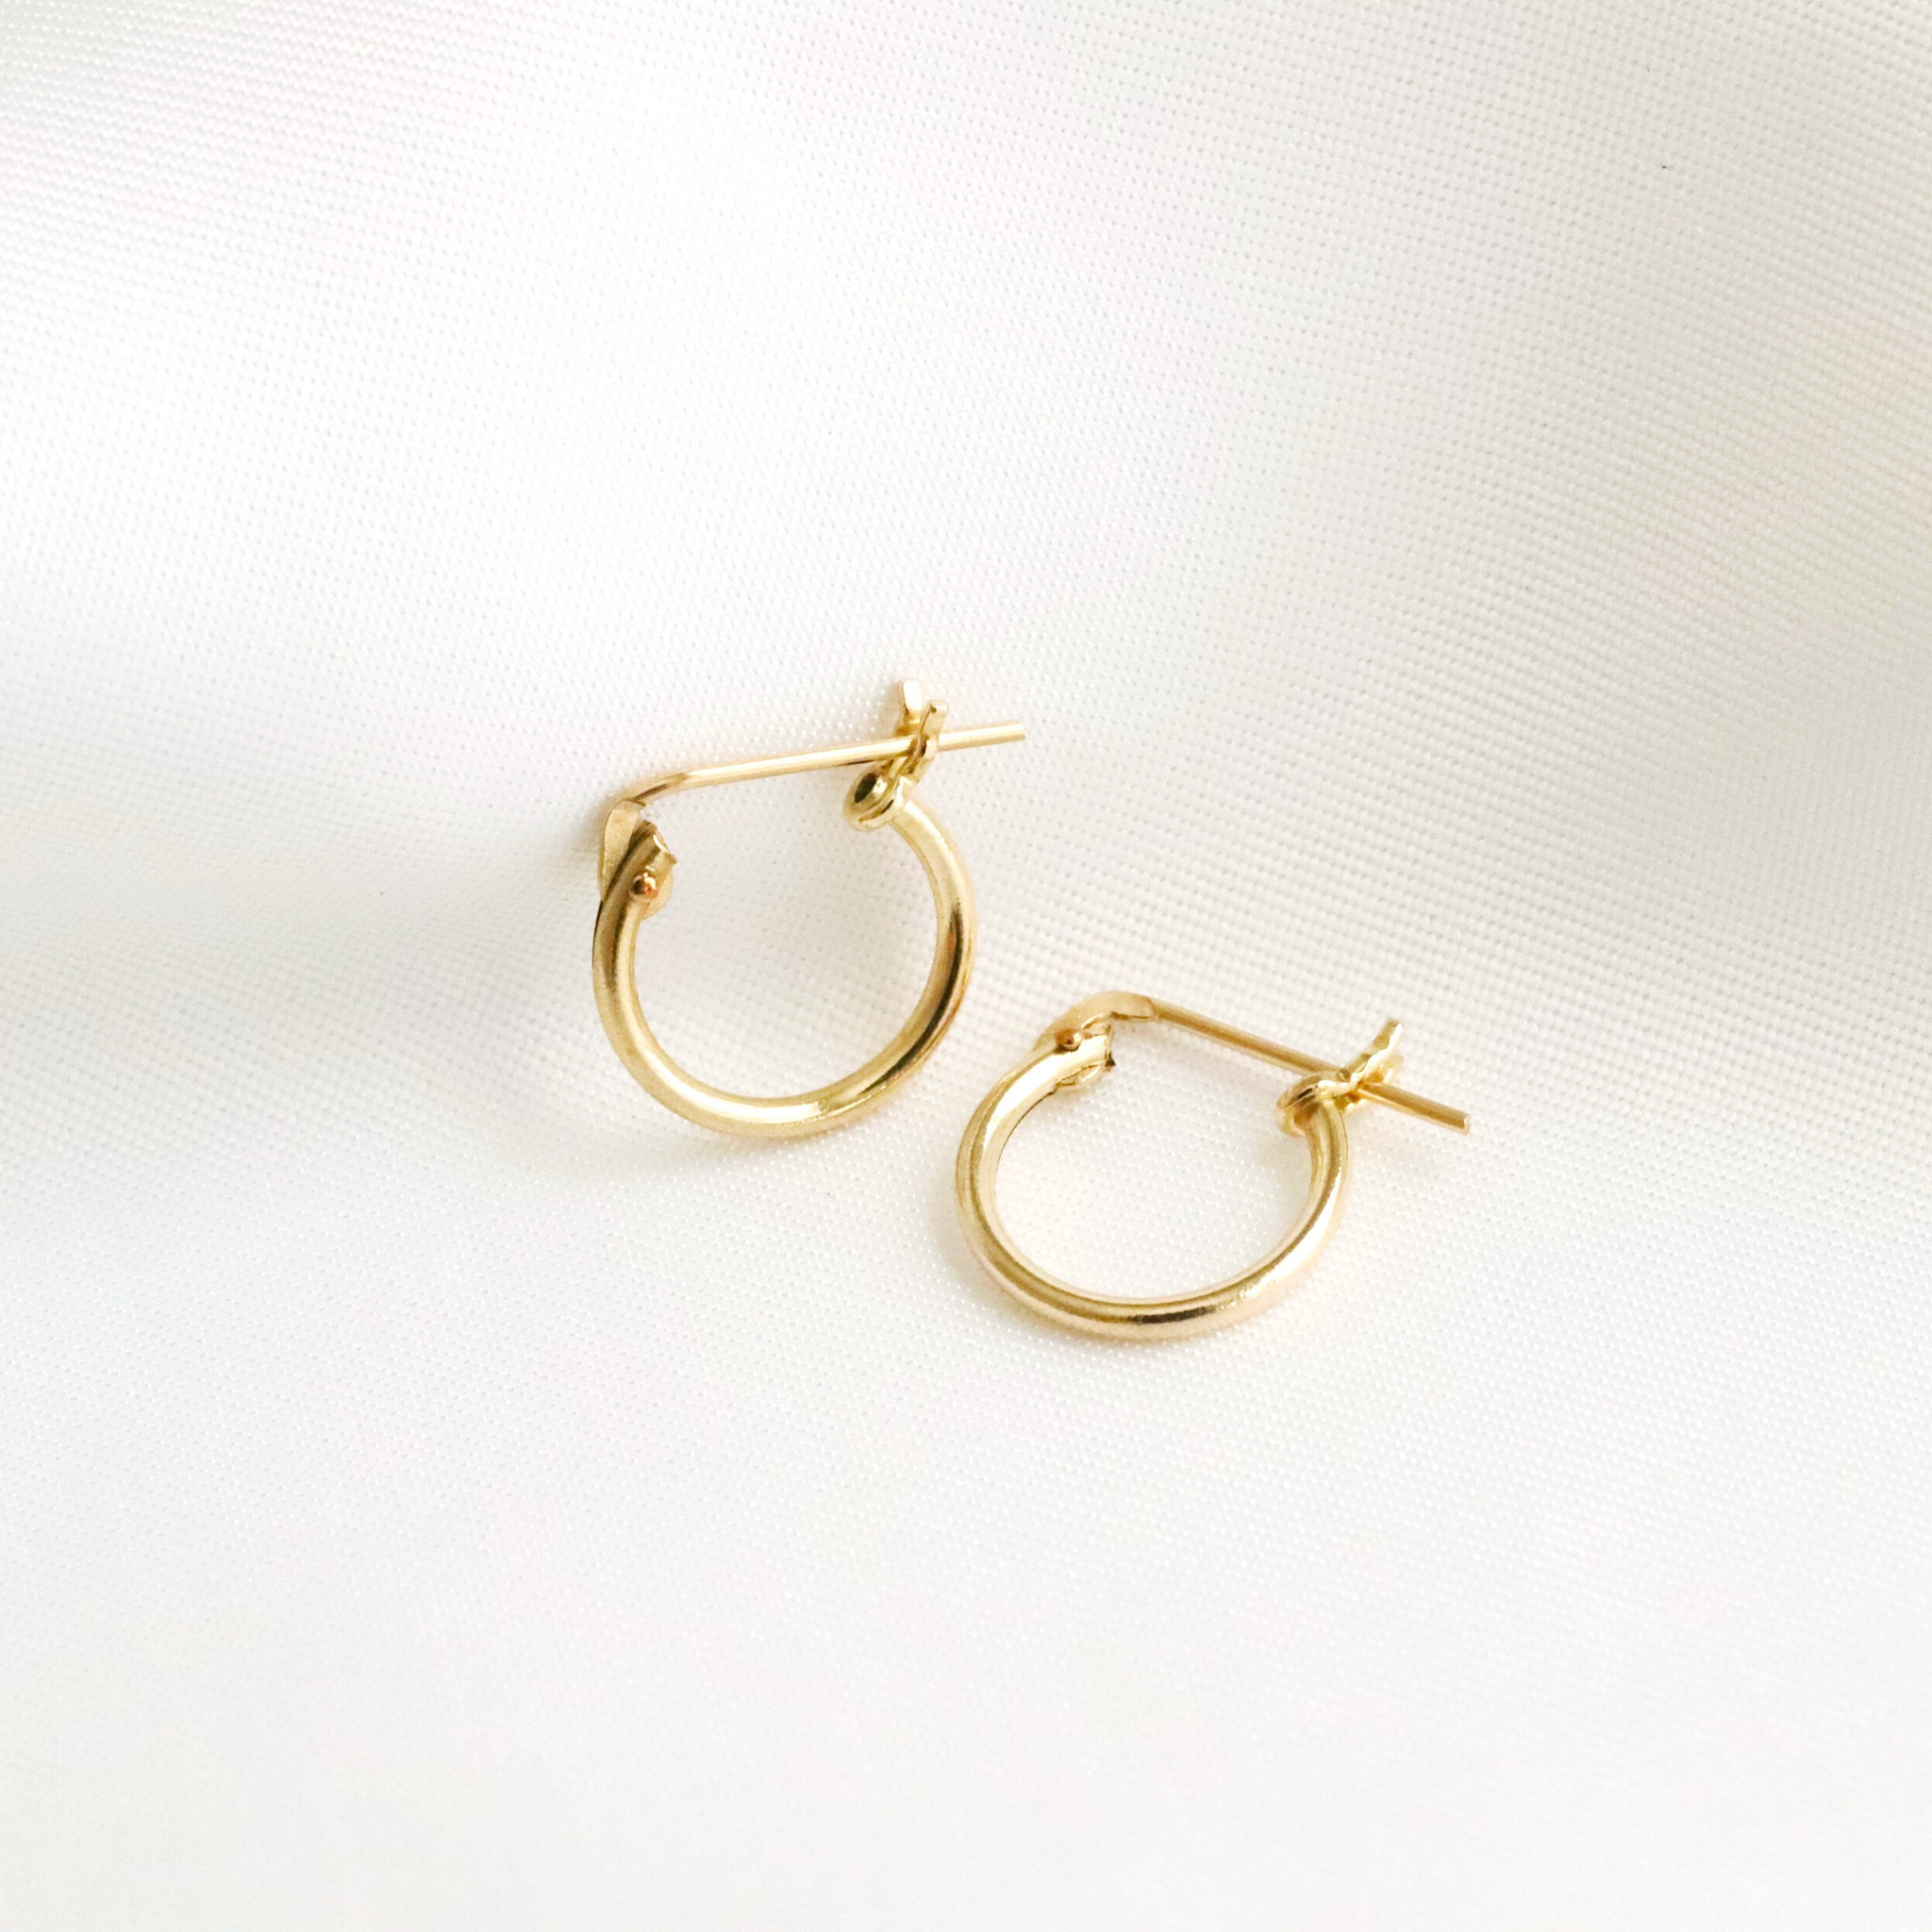 Small hoop earrings Small gold hoop earrings Tiny hoop | Etsy